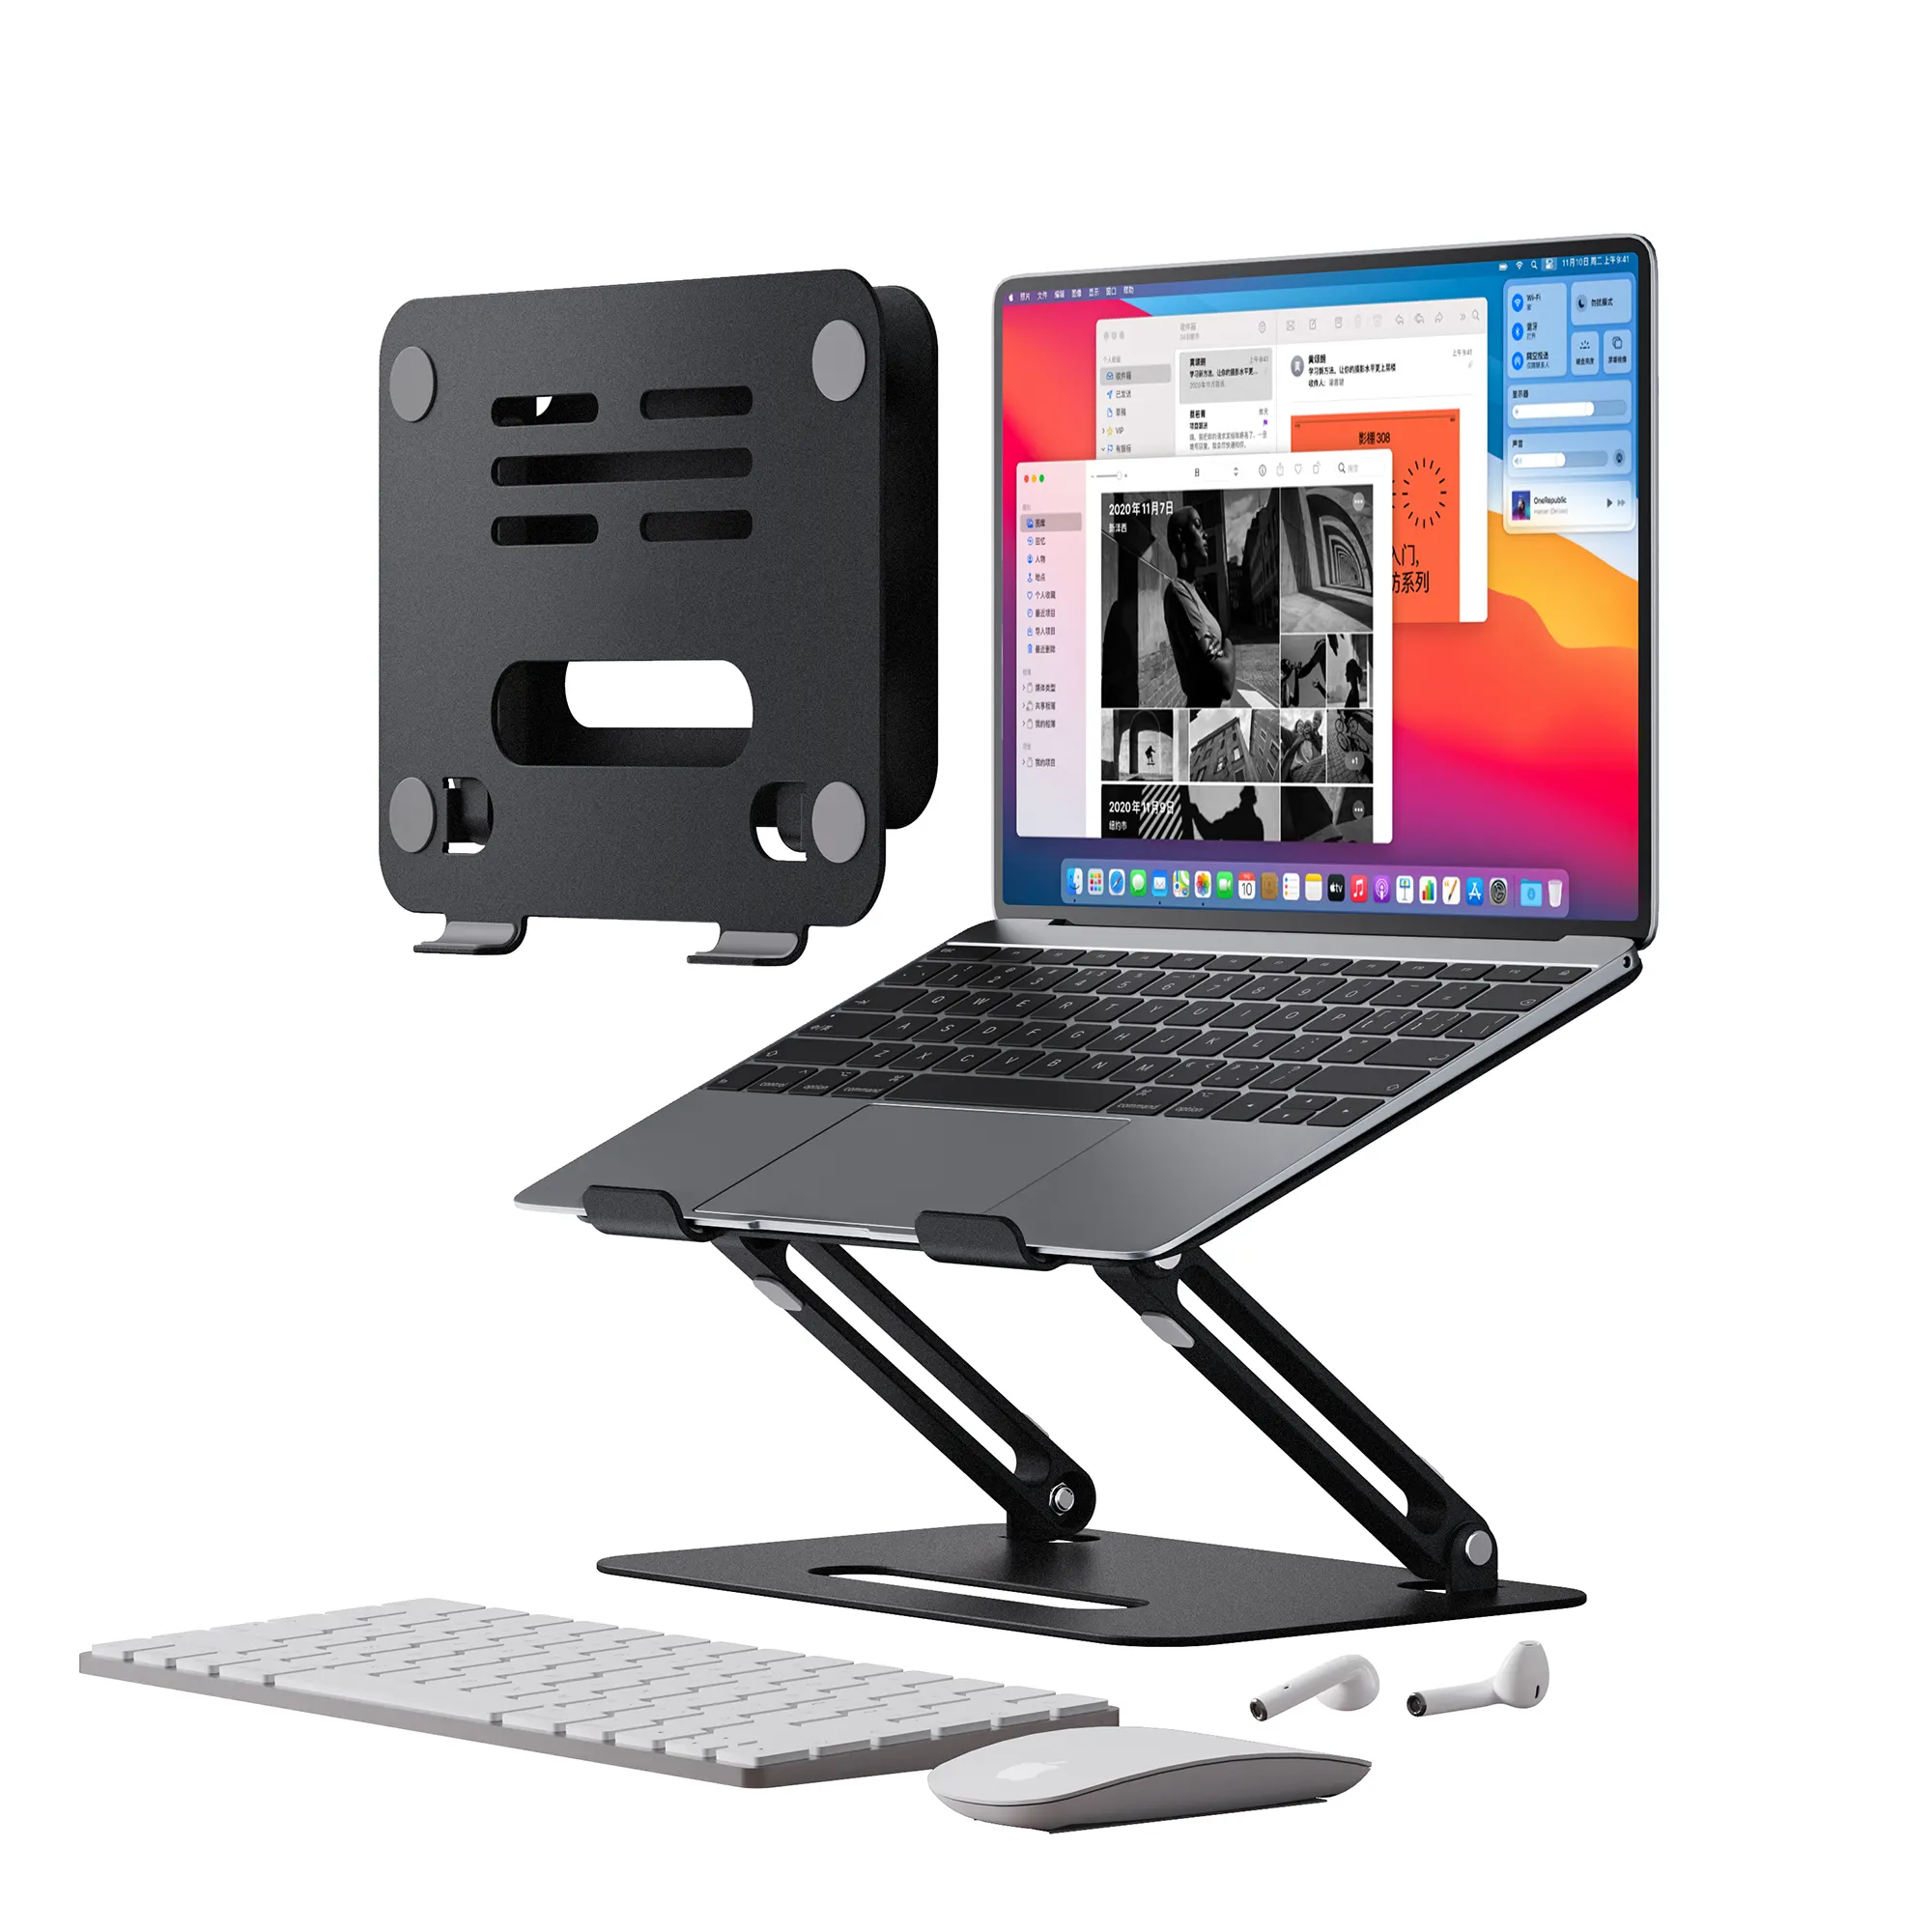 최신 휴대용 알루미늄 노트북 홀더 USB 허브 높이 각도 조정 가능한 허브 도킹 스테이션이있는 접이식 노트북 스탠드